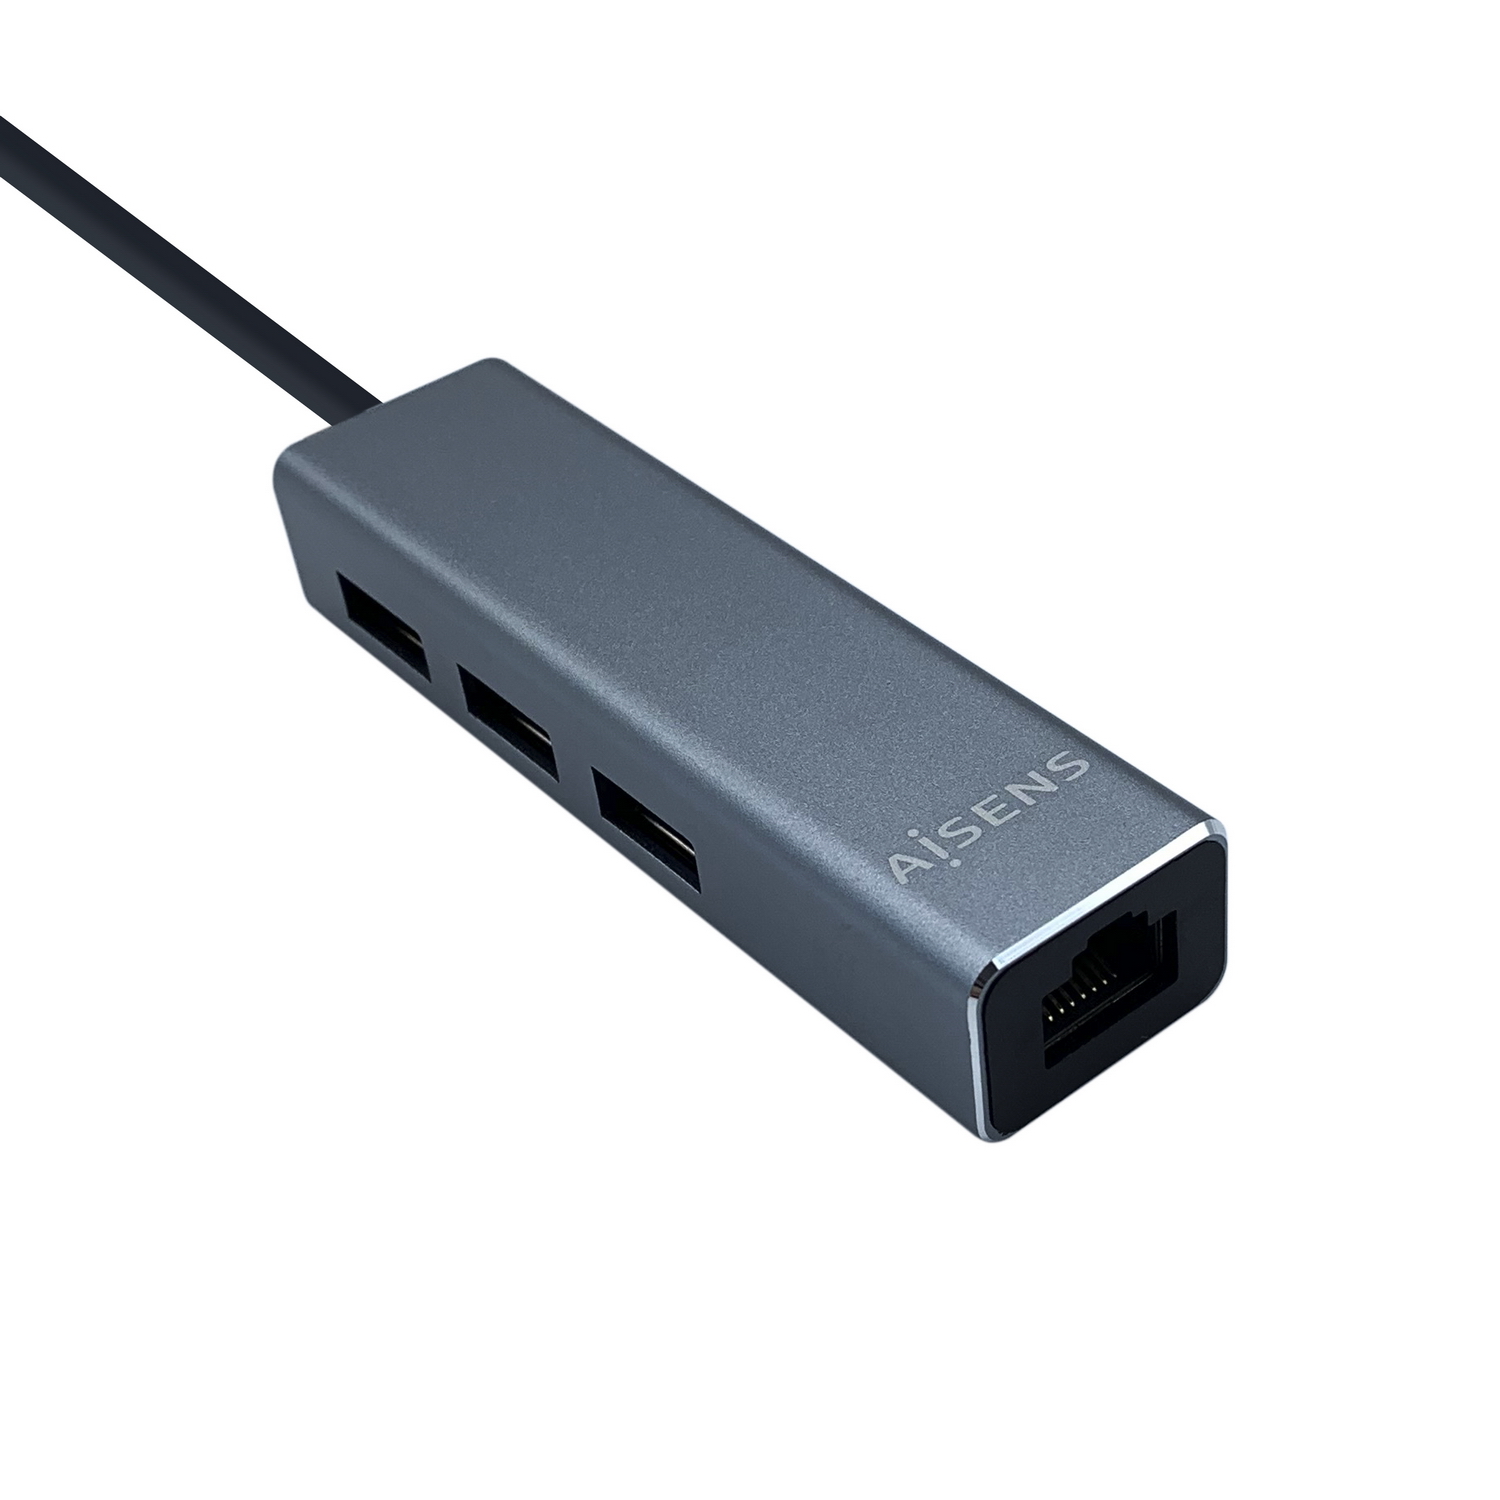 Aisens Convertisseur USB 3.0 vers Ethernet GIGABIT 10/100/1000 MBPS + HUB 3xUSB3.0 - 15cm - Couleur Gris